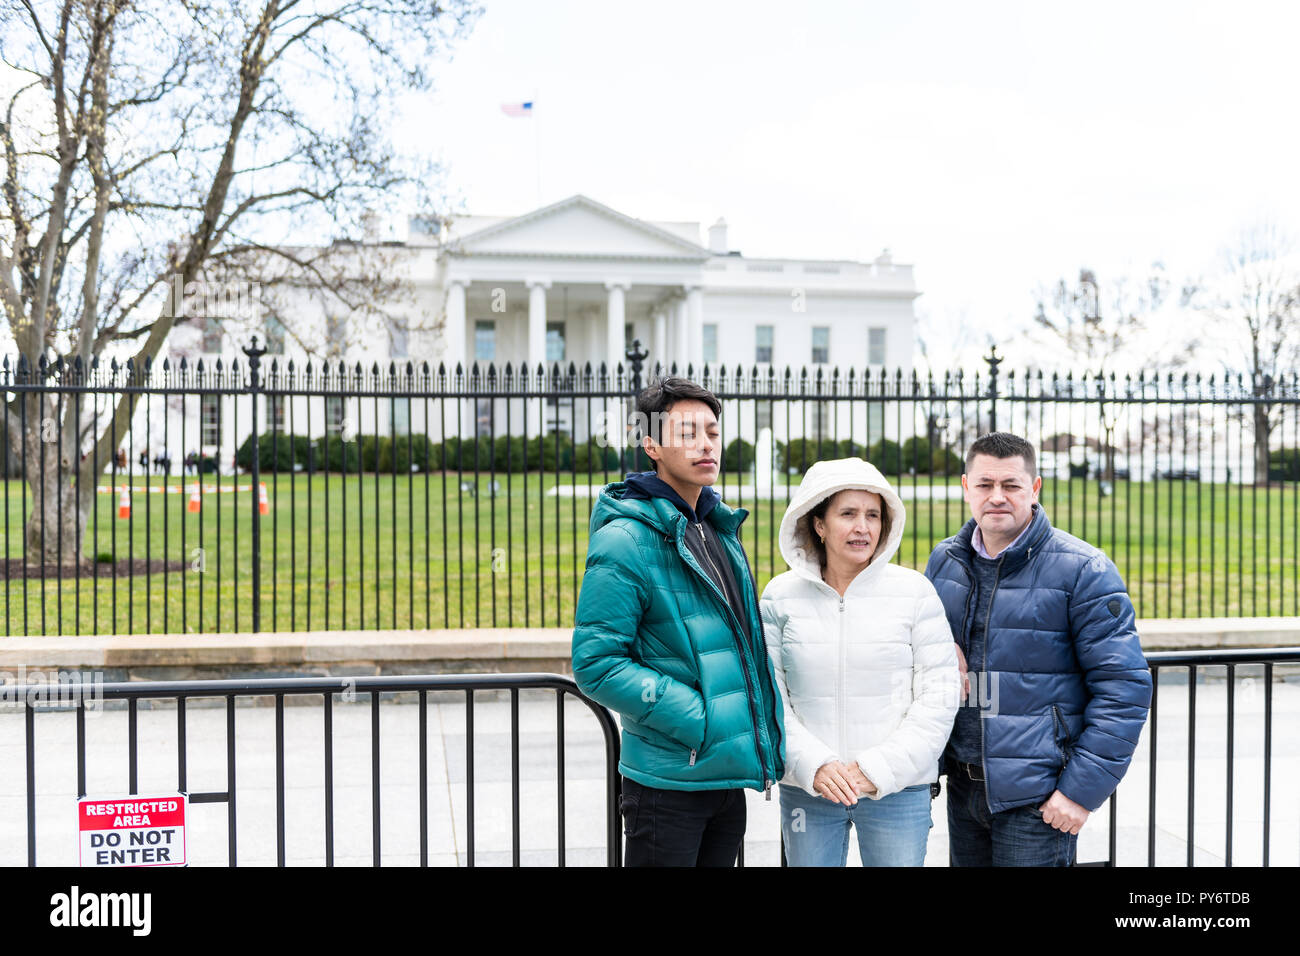 Washington DC, USA - März 9, 2018: Familie Menschen Bilder aufnehmen im White House Präsident Gebäude in der Hauptstadt der Vereinigten Staaten im Kalten Winter Stockfoto